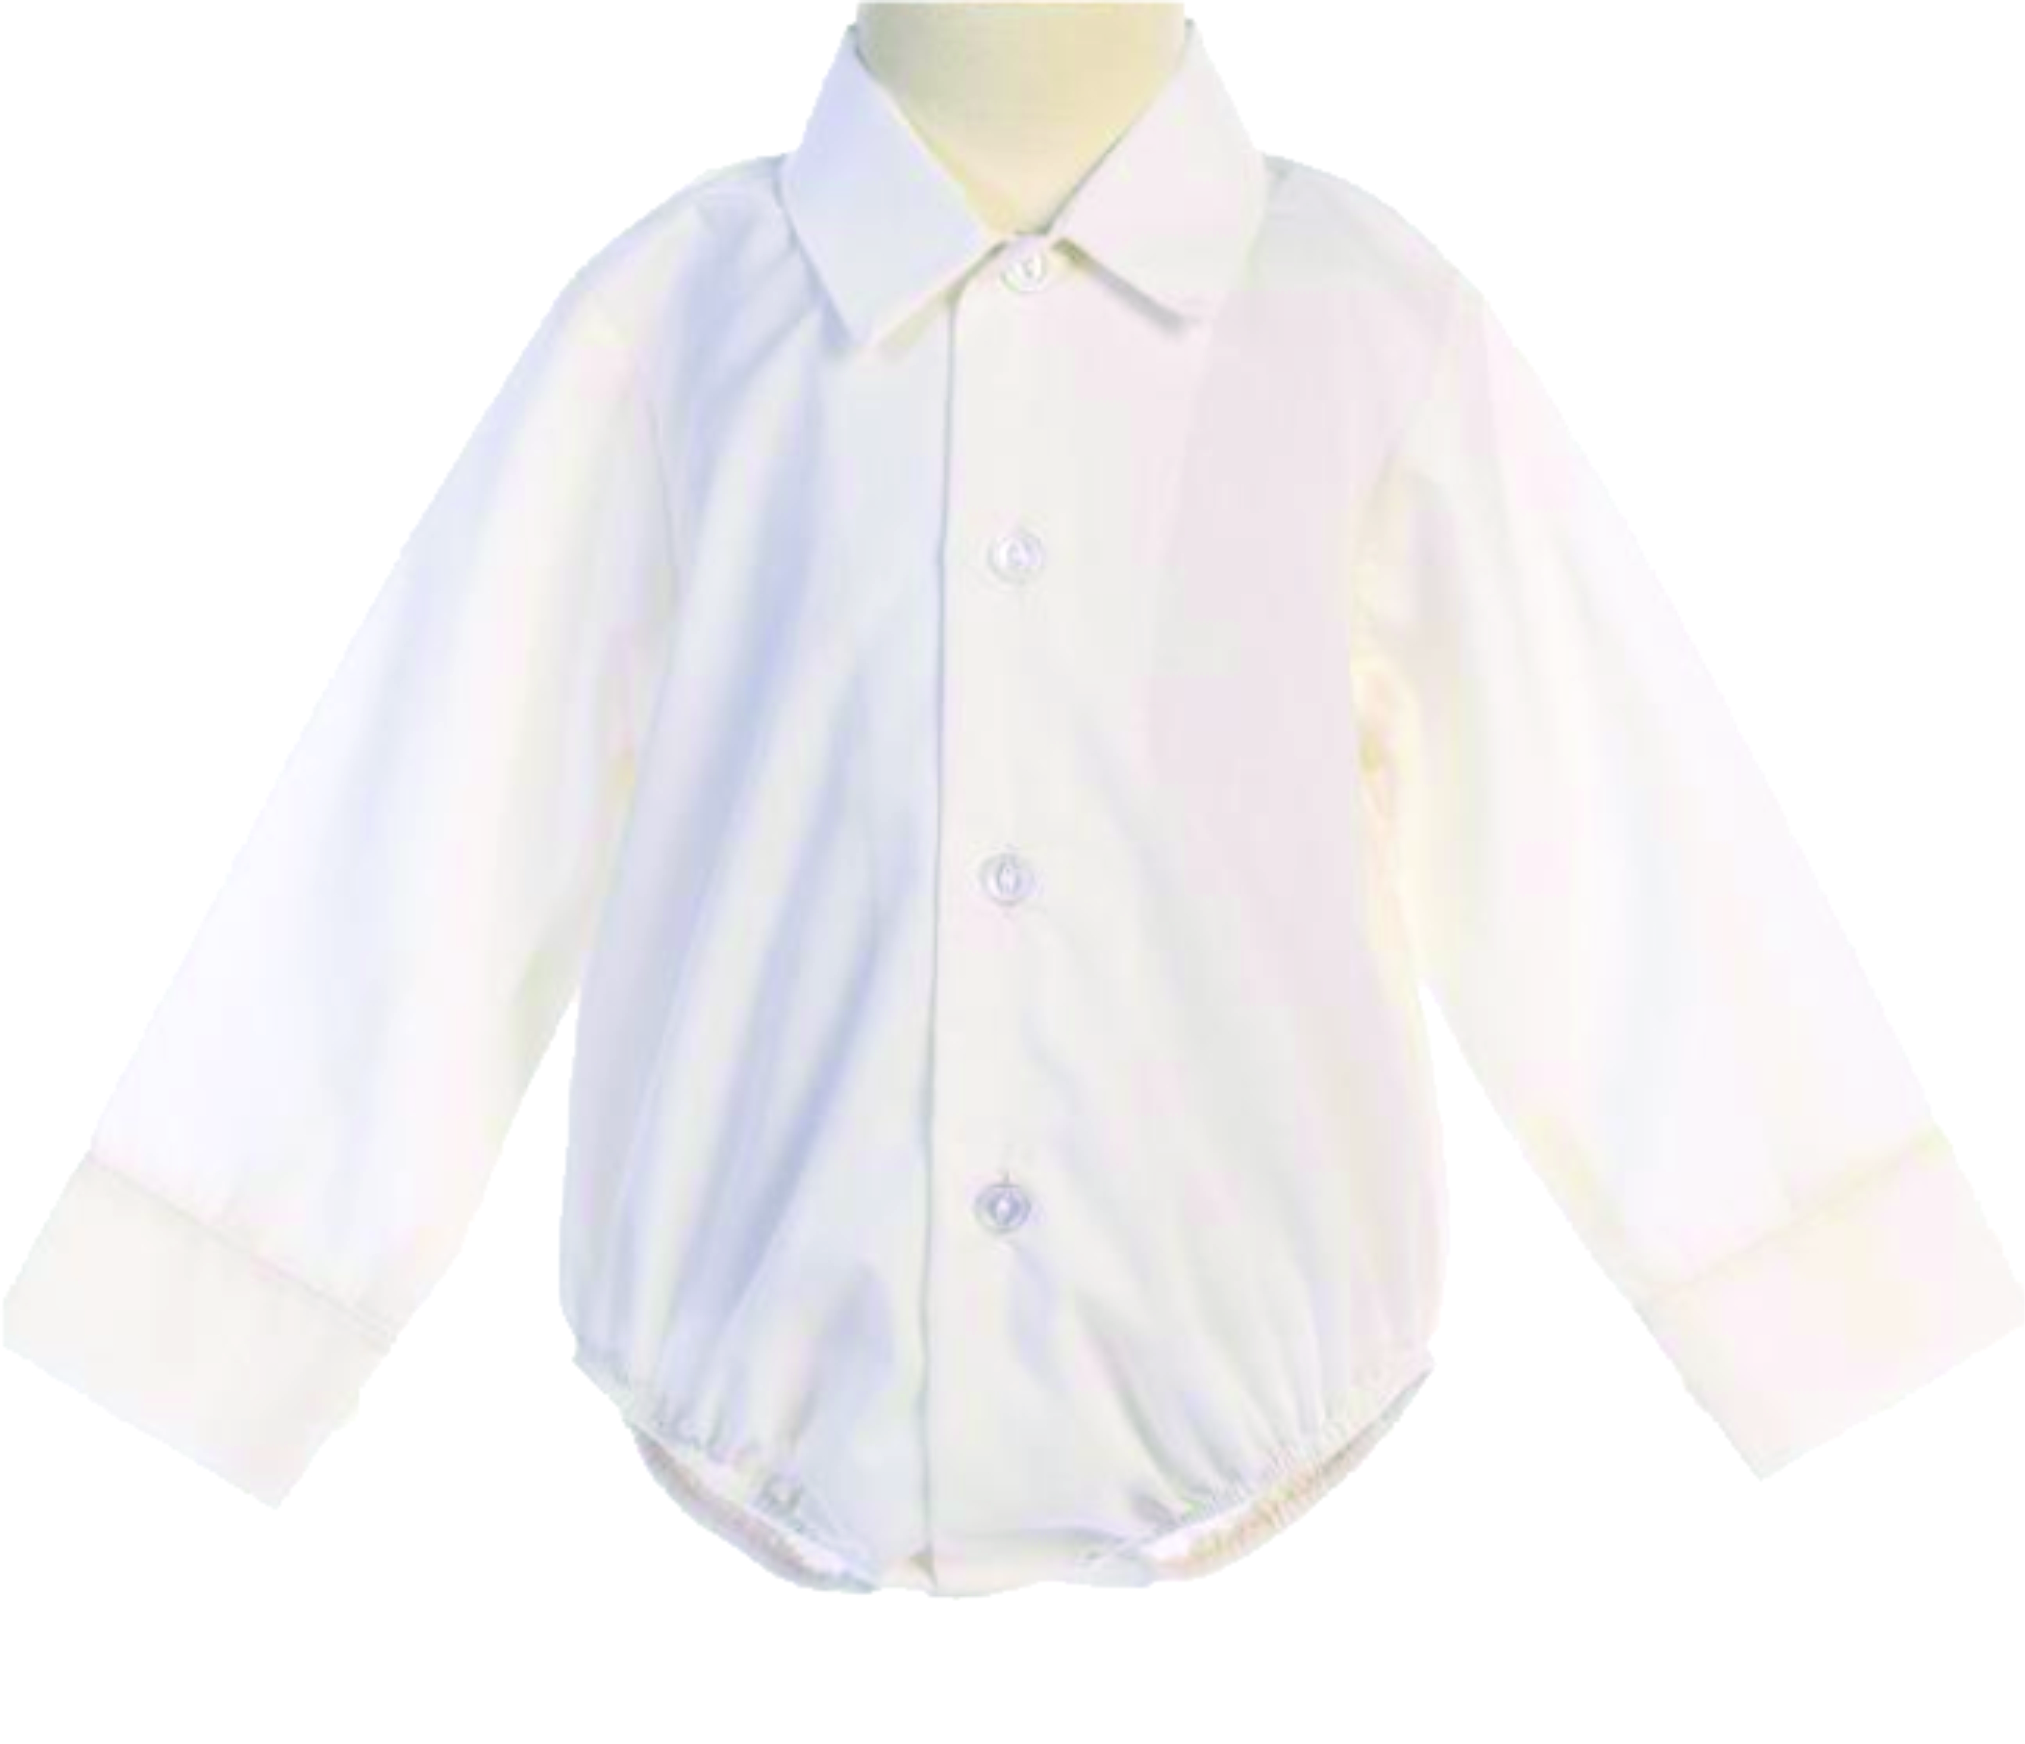 Christening / Baptism Onesie Shirt White - Giftables